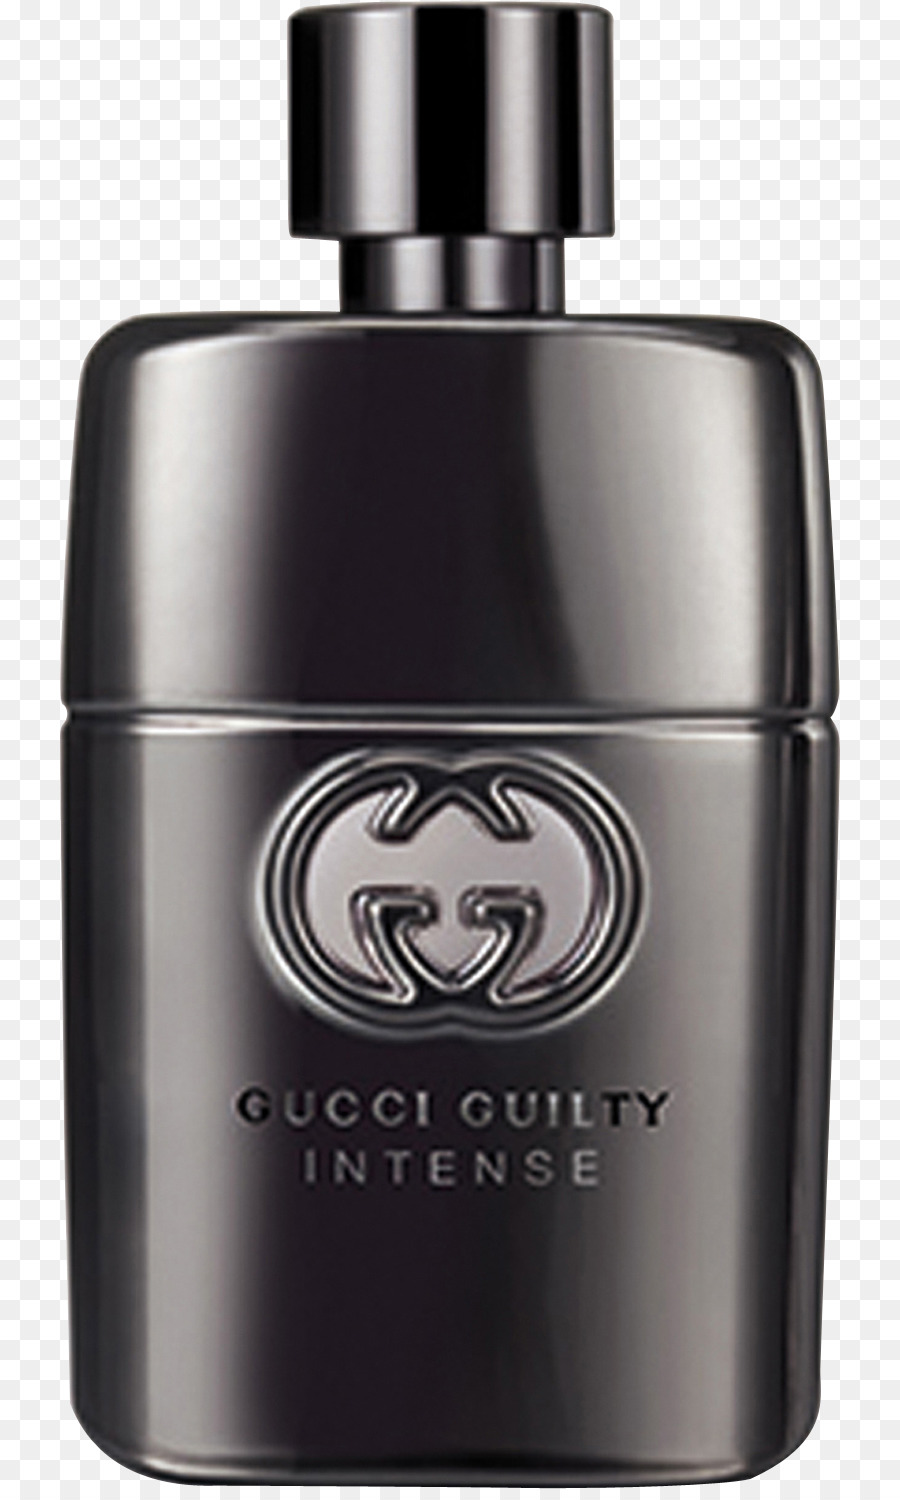 Gucci Guilty Intense Eau De Parfum Spray Profumo Gucci Guilty Intense Eau De Toilette Spray for Men, 3.0 oz, Arancione - profumo